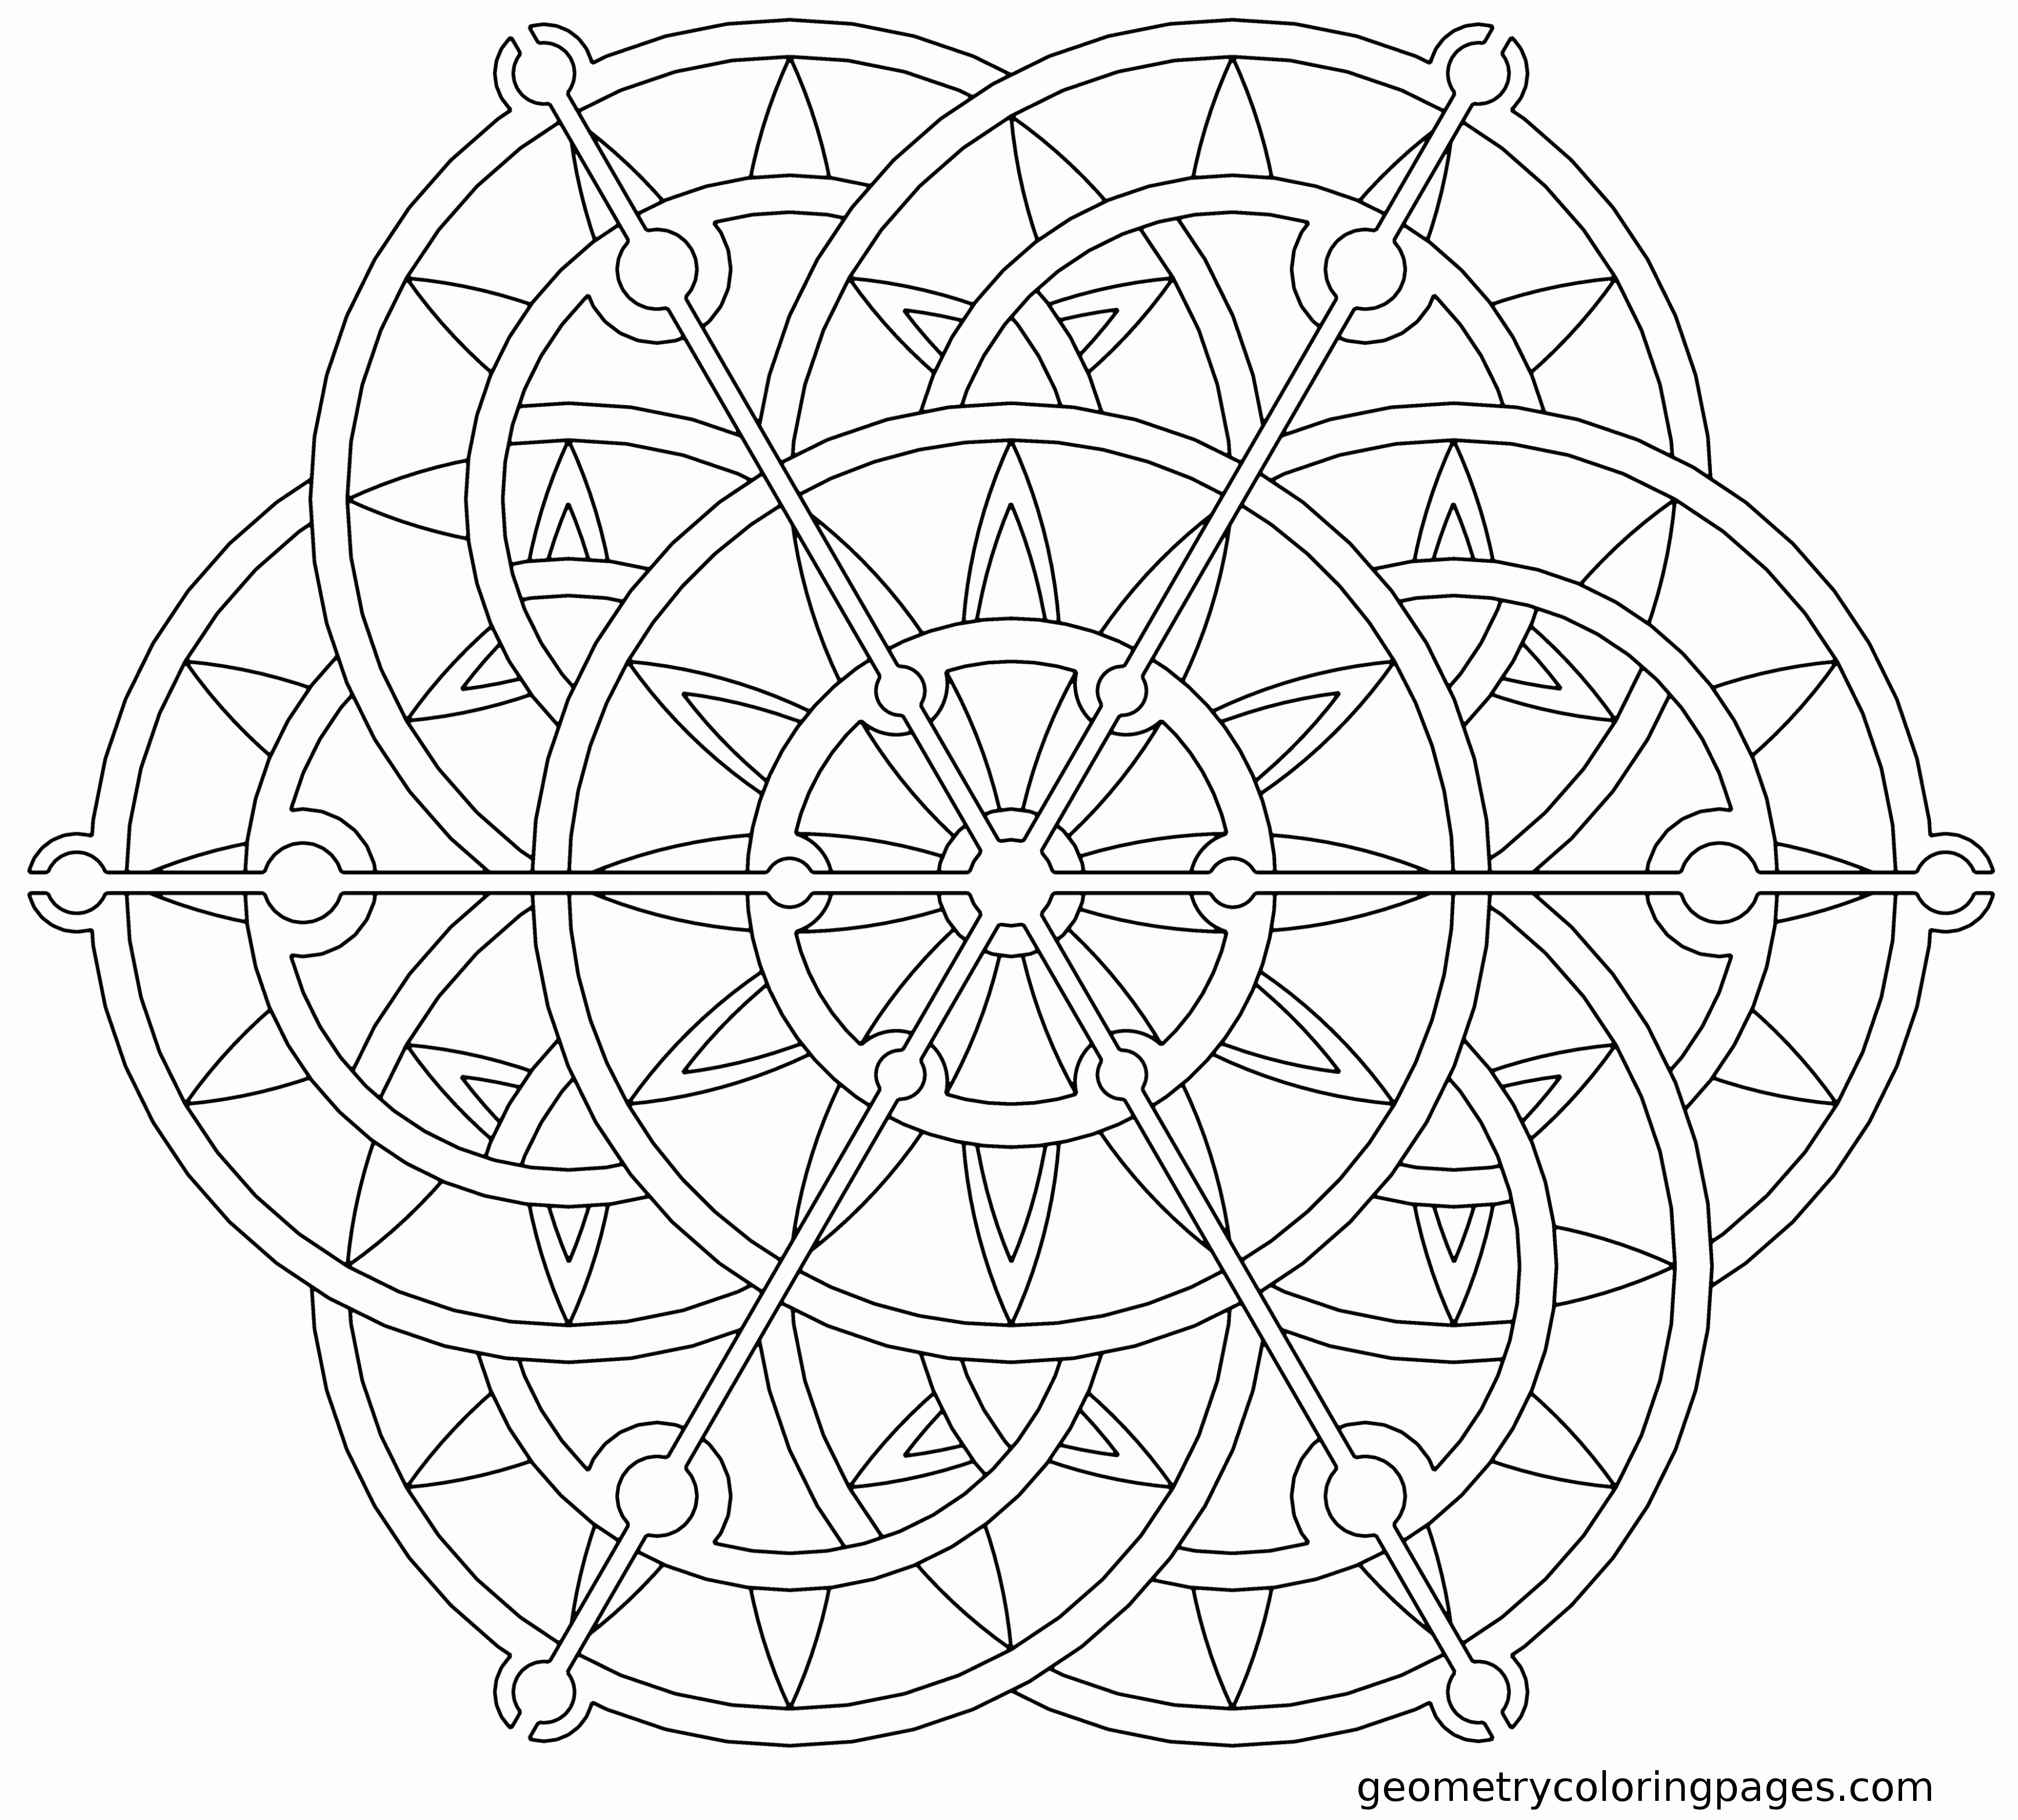 8 Pics of Lotus Mandala Coloring Pages - Lotus Flower Mandala ...